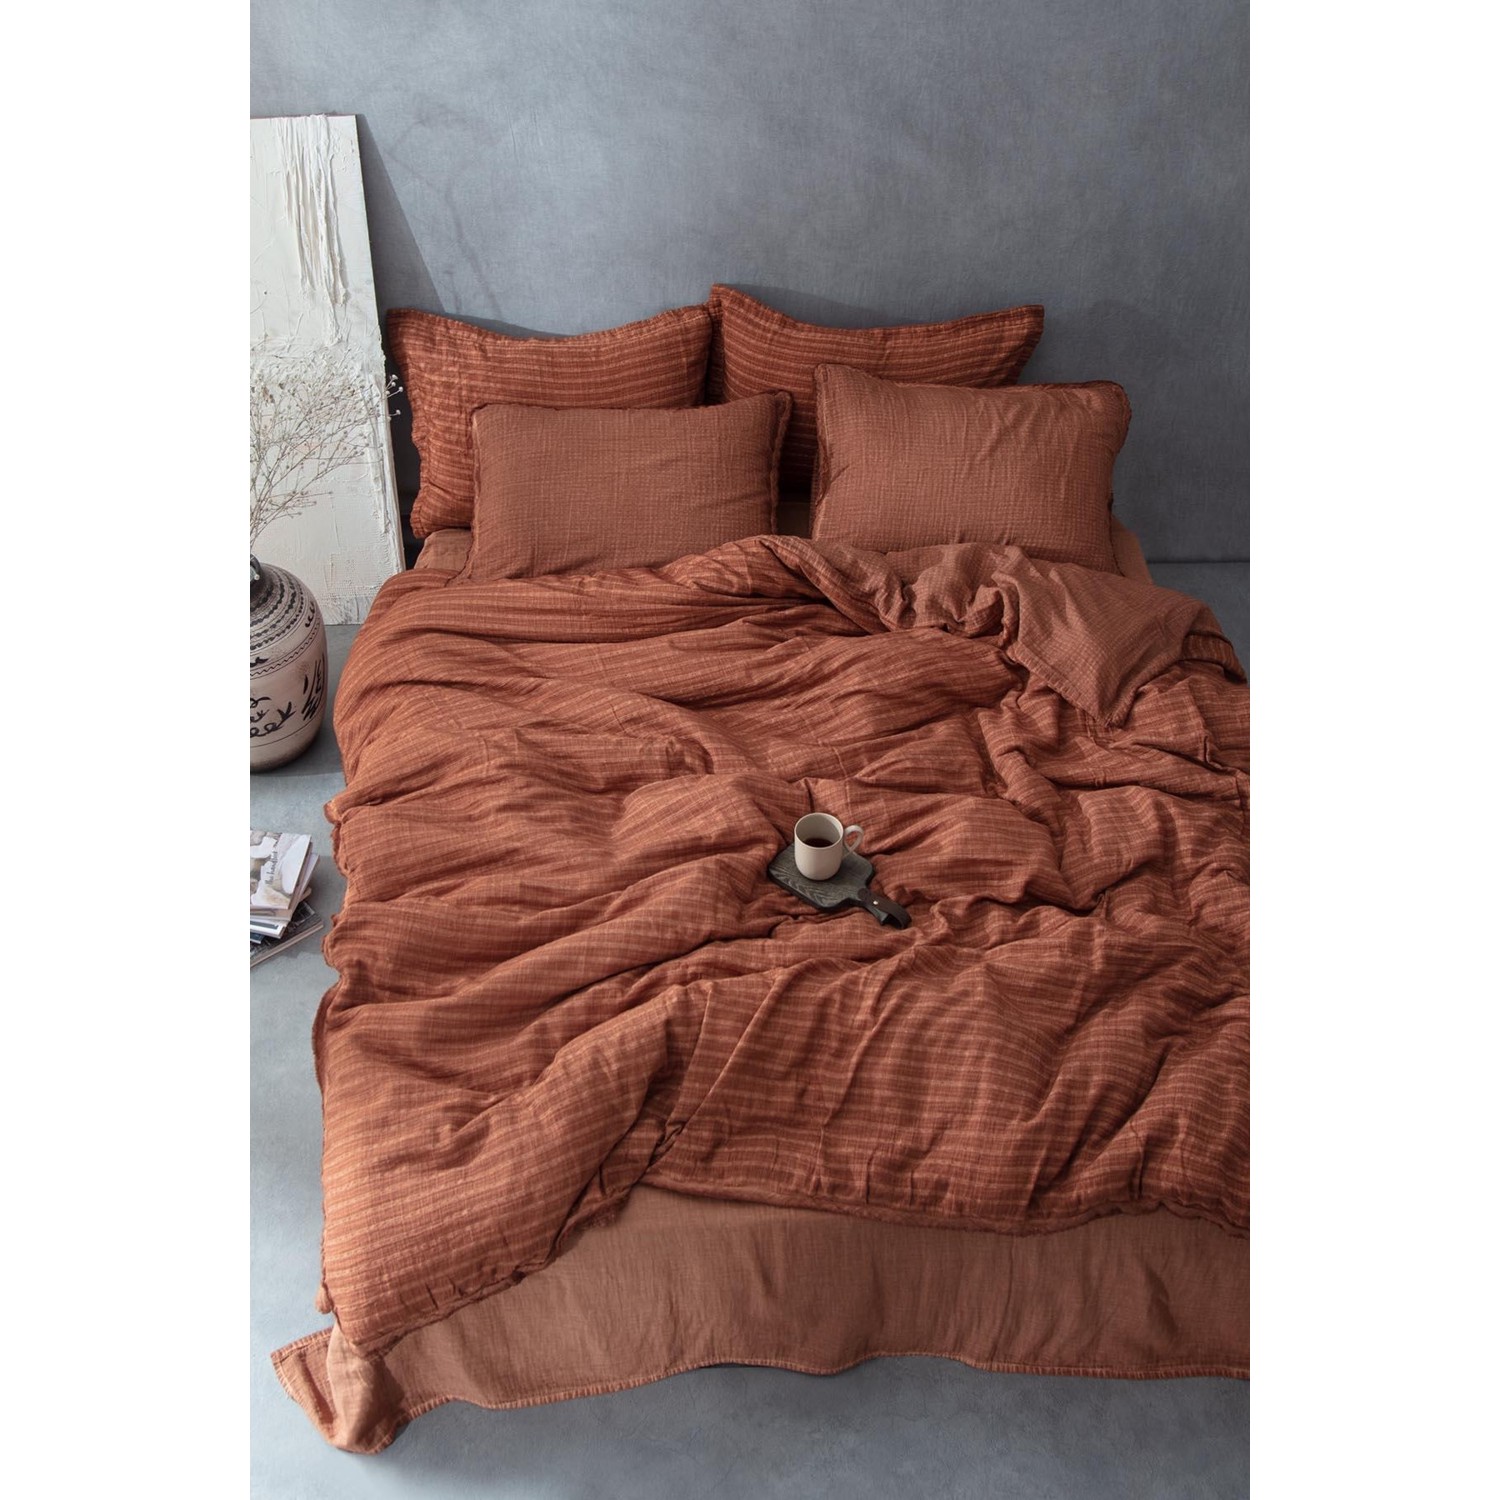 Комплект постельного белья Ecocotton Tara из 100% органического хлопка, муслин, коричневый, 200X220 см